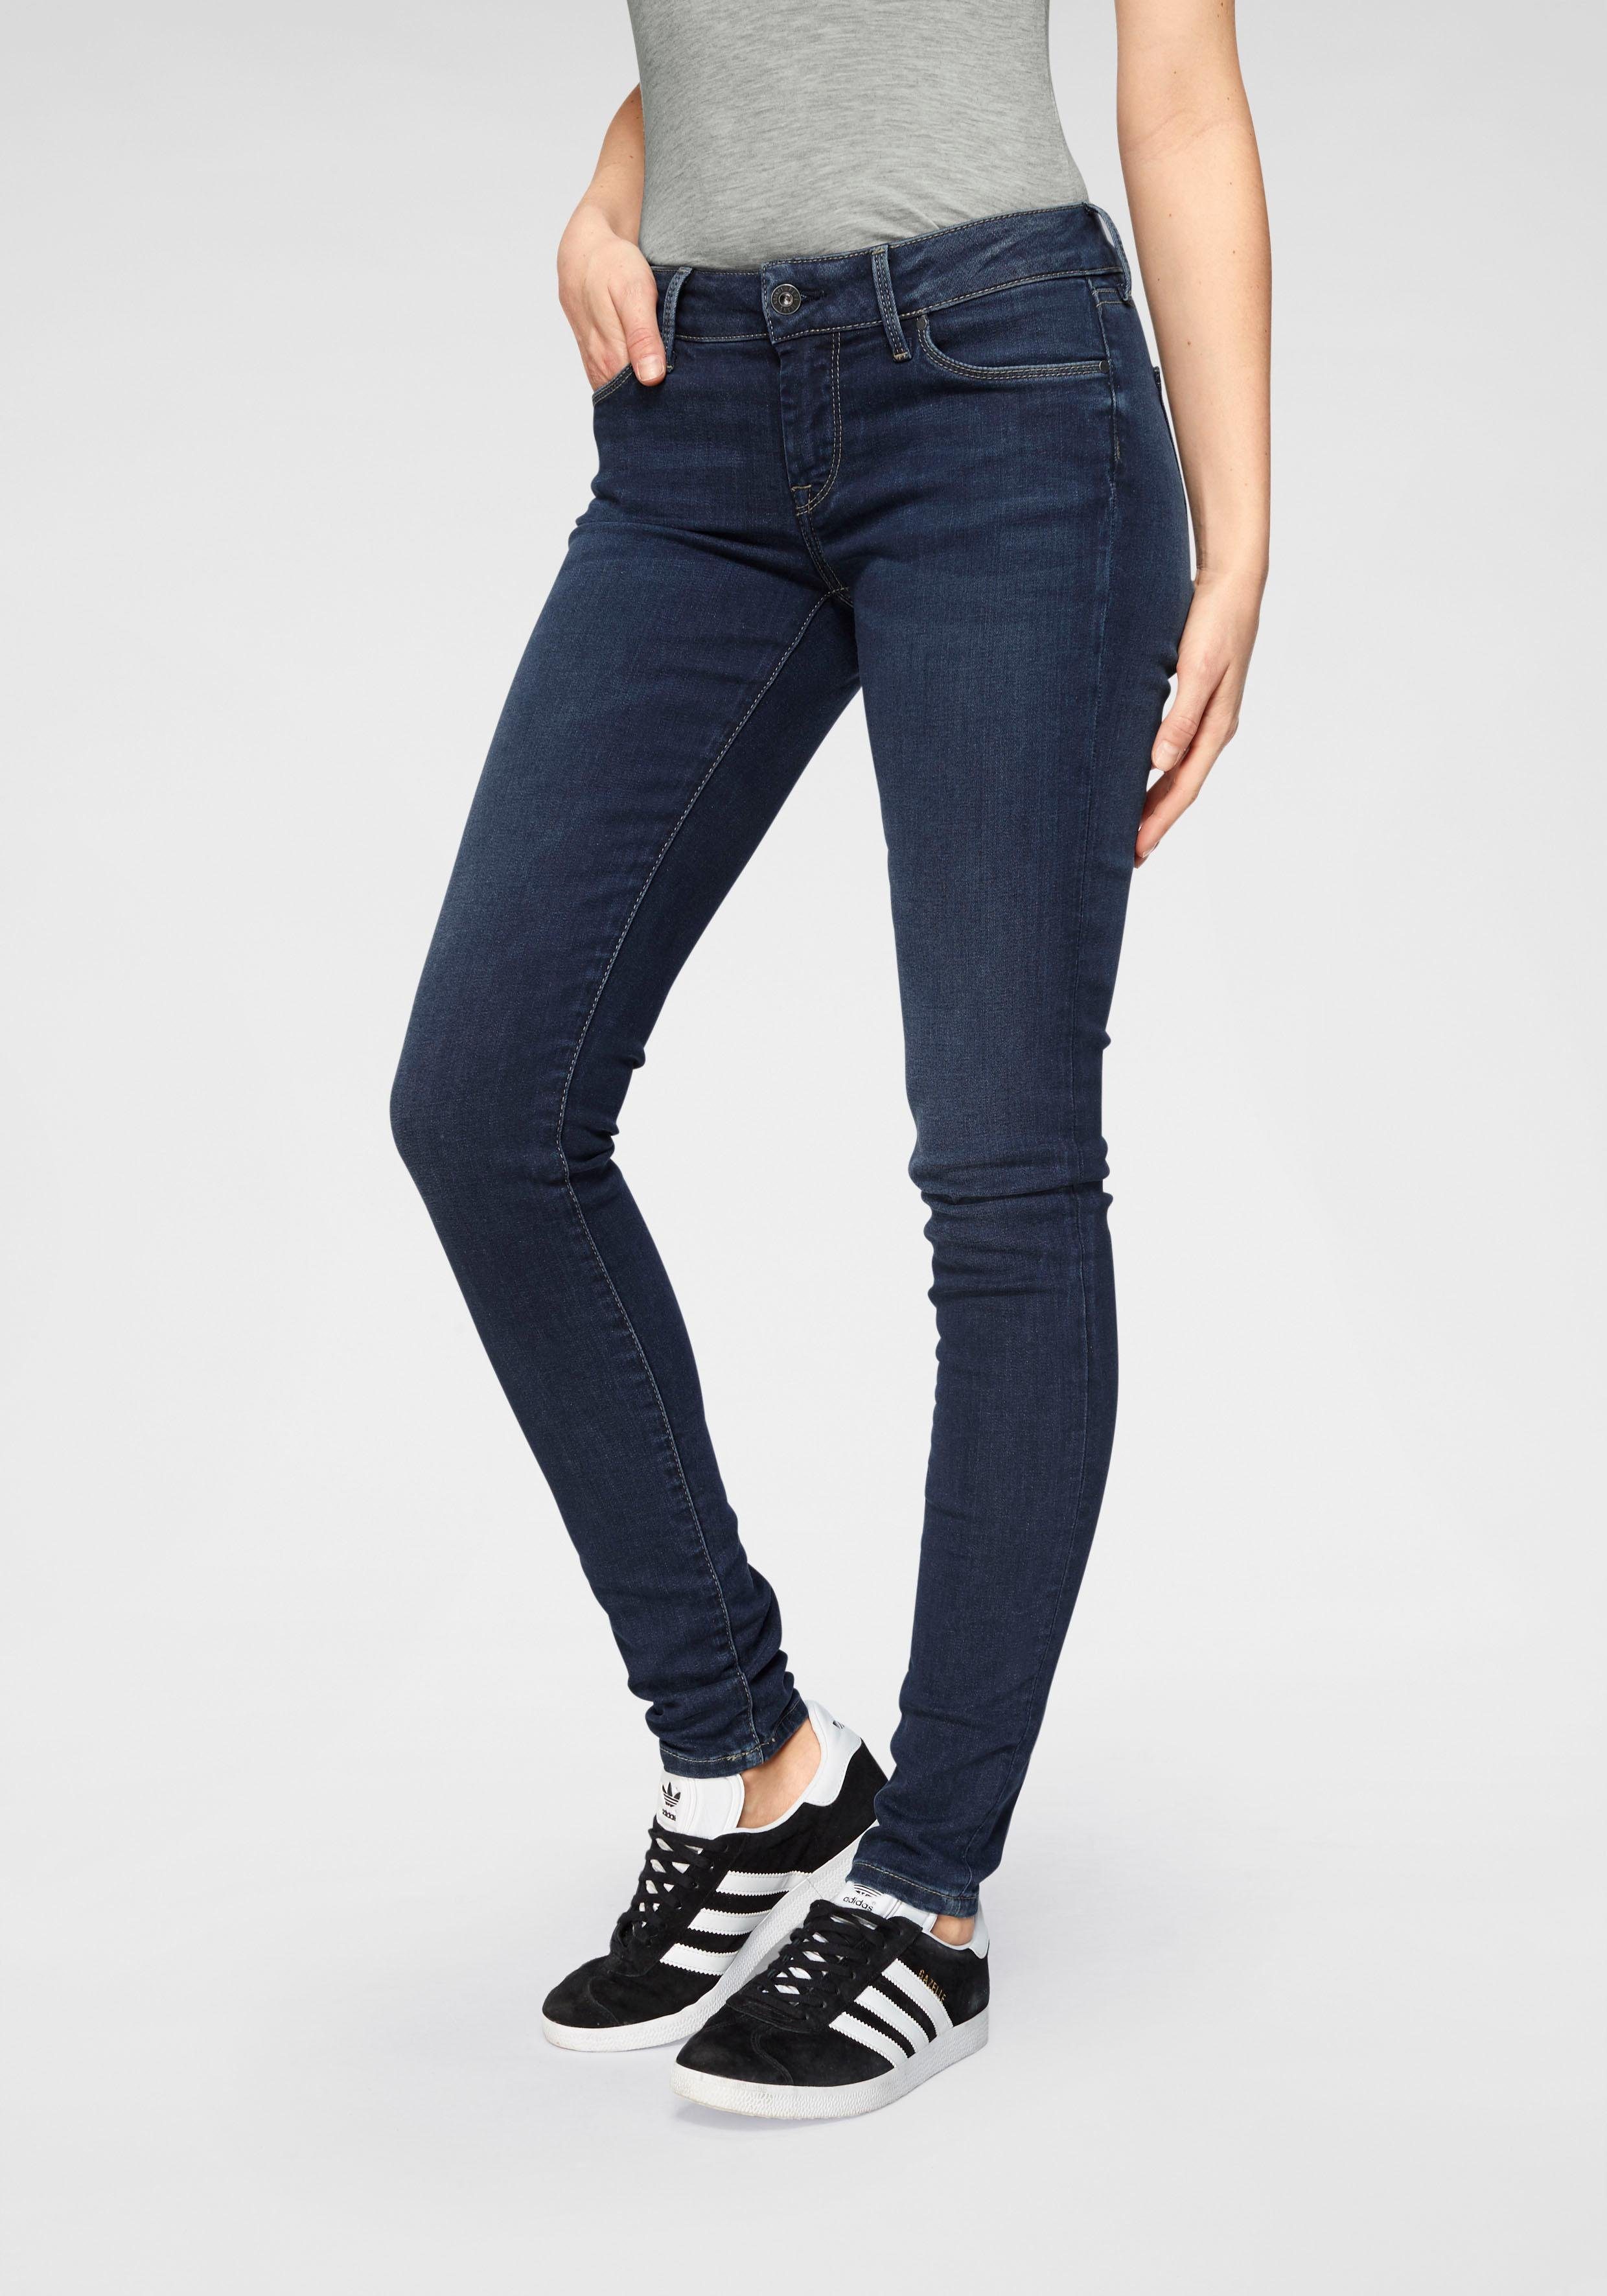 Pepe Bund dark Skinny-fit-Jeans worn 5-Pocket-Stil und 1-Knopf Jeans mit SOHO Stretch-Anteil H45 im used